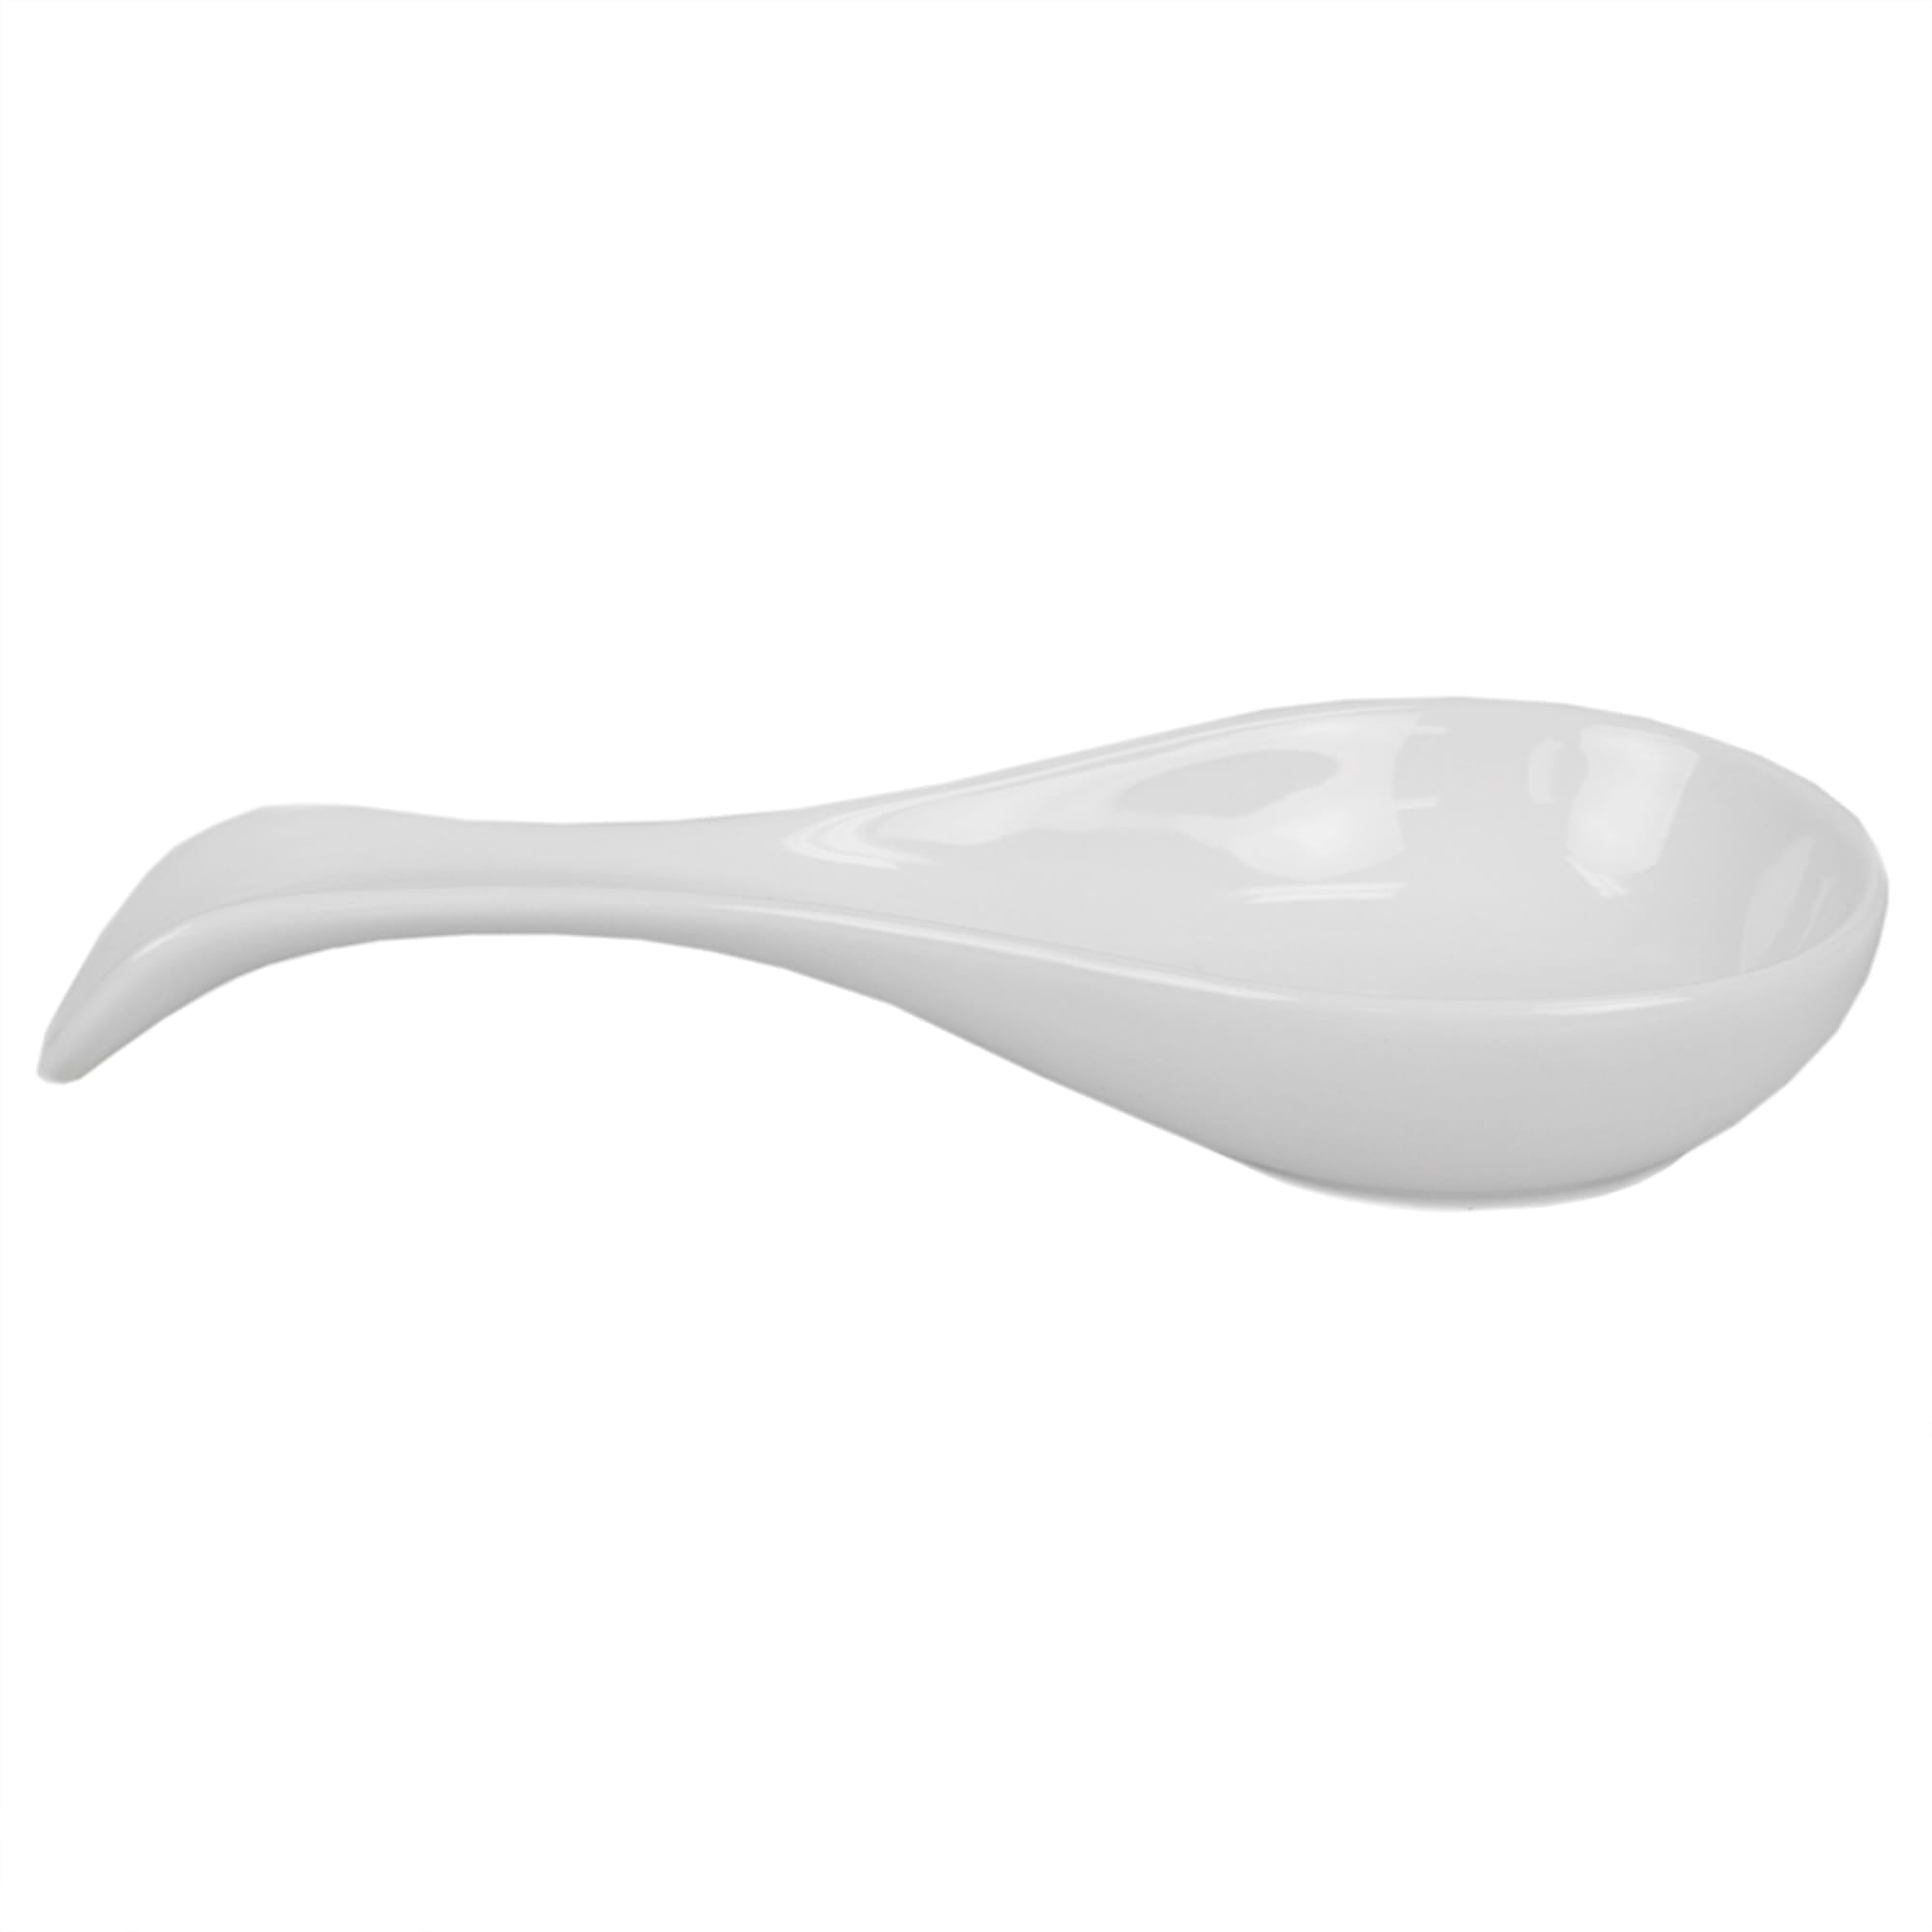 Home Basics Ceramic Spoon Rest, White $4.00 EACH, CASE PACK OF 12